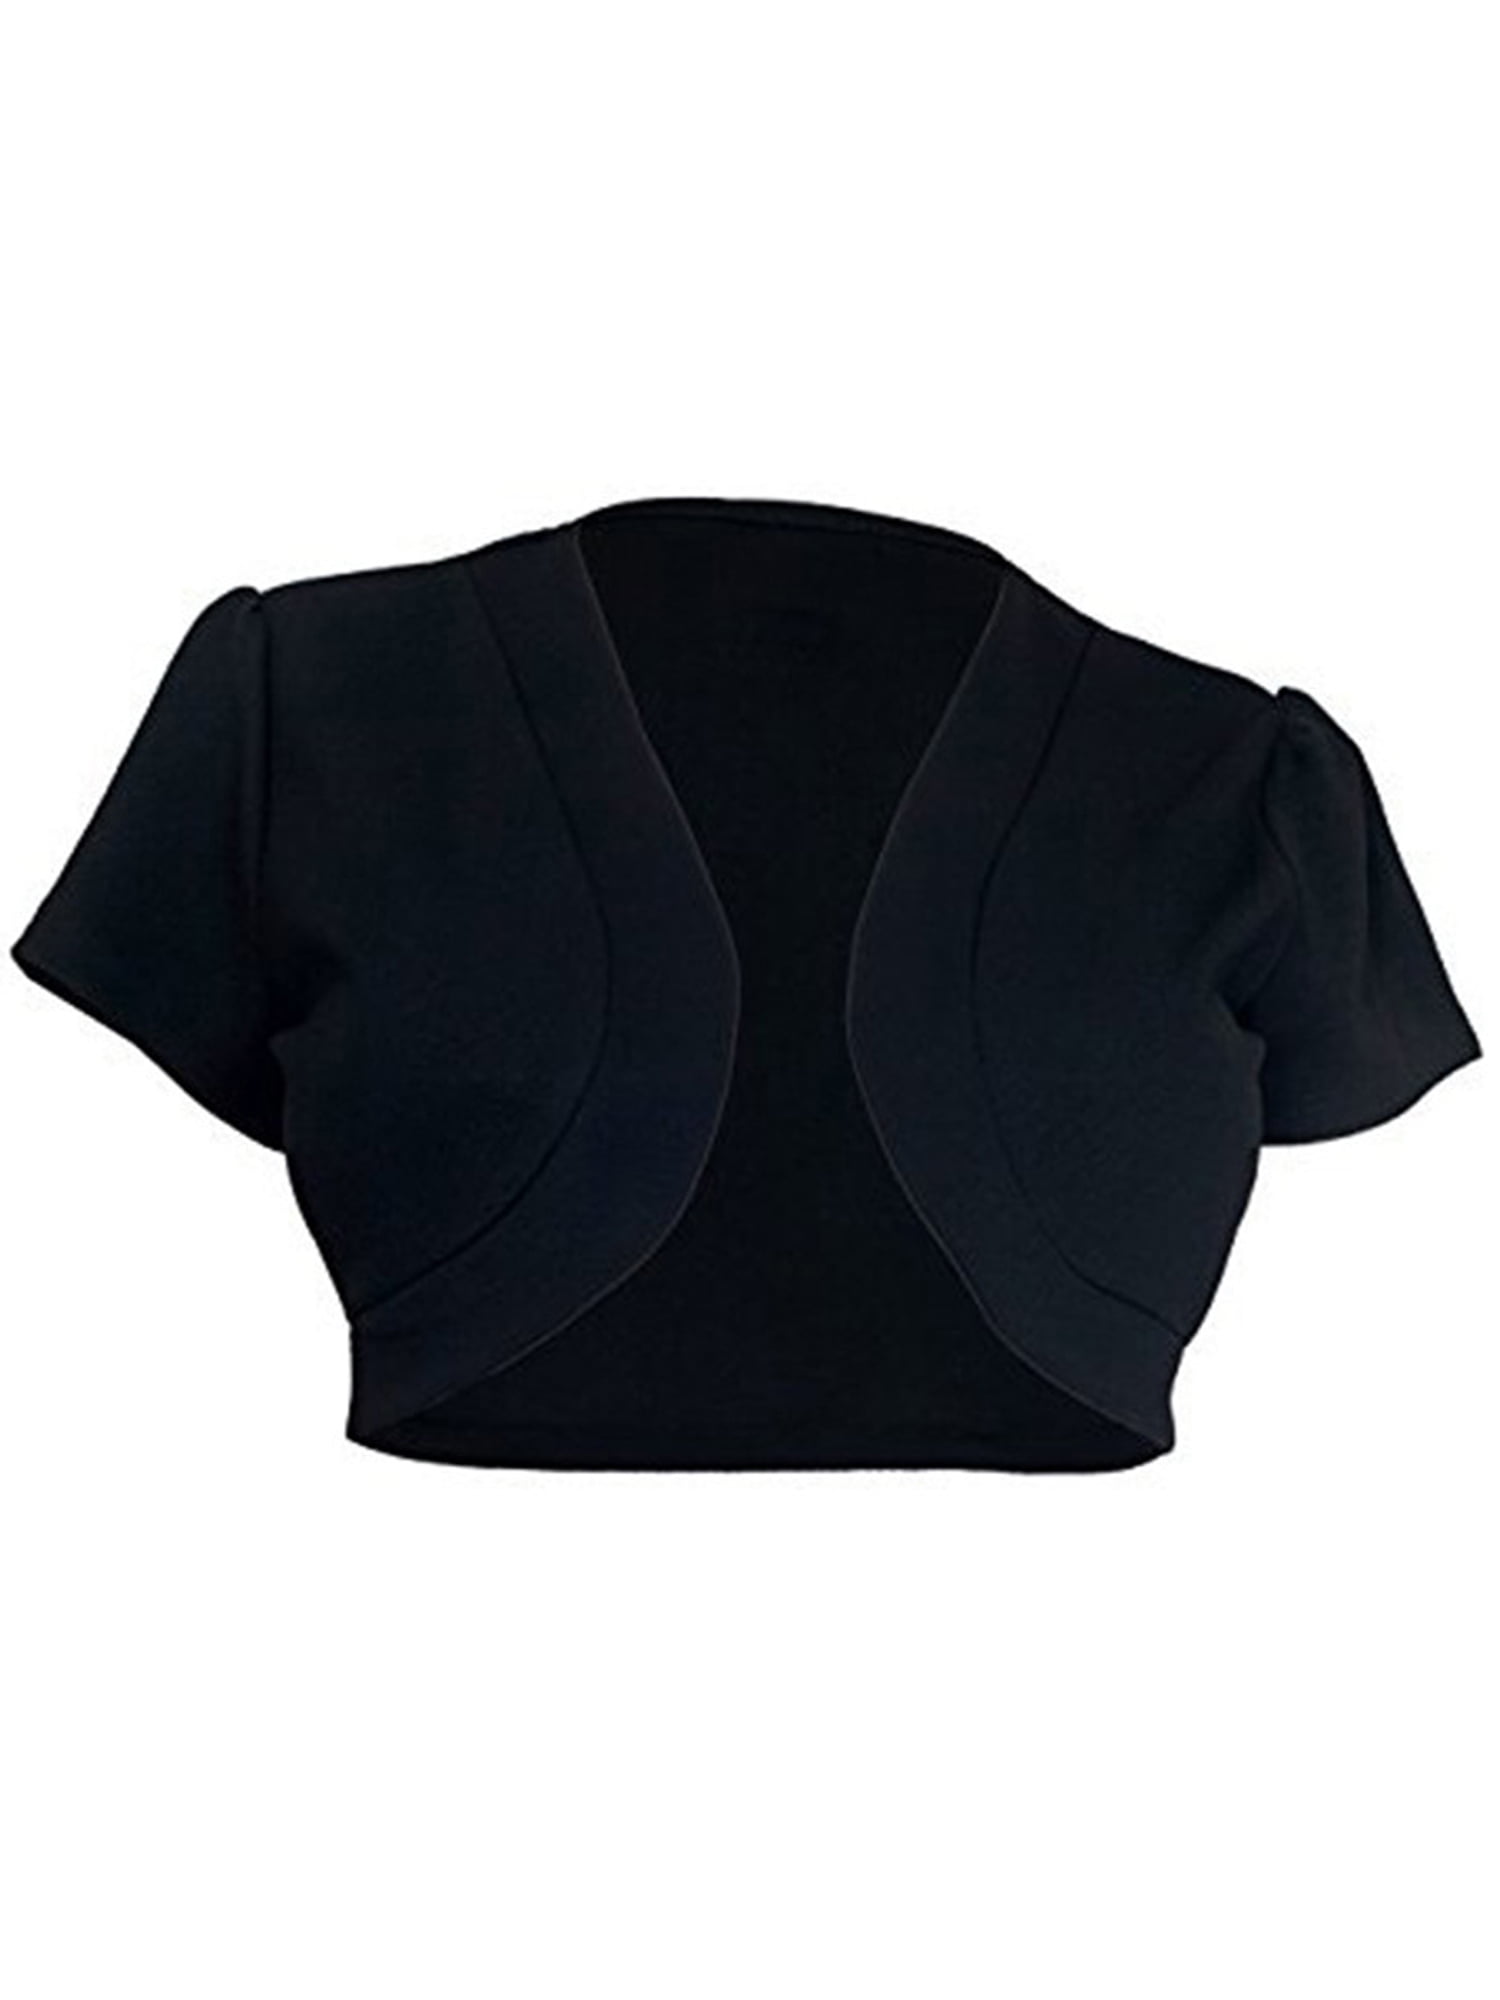 Women's Short Sleeve Cardigan Open Front Round Hem Cropped Jacket Classic Bolero Shrug 